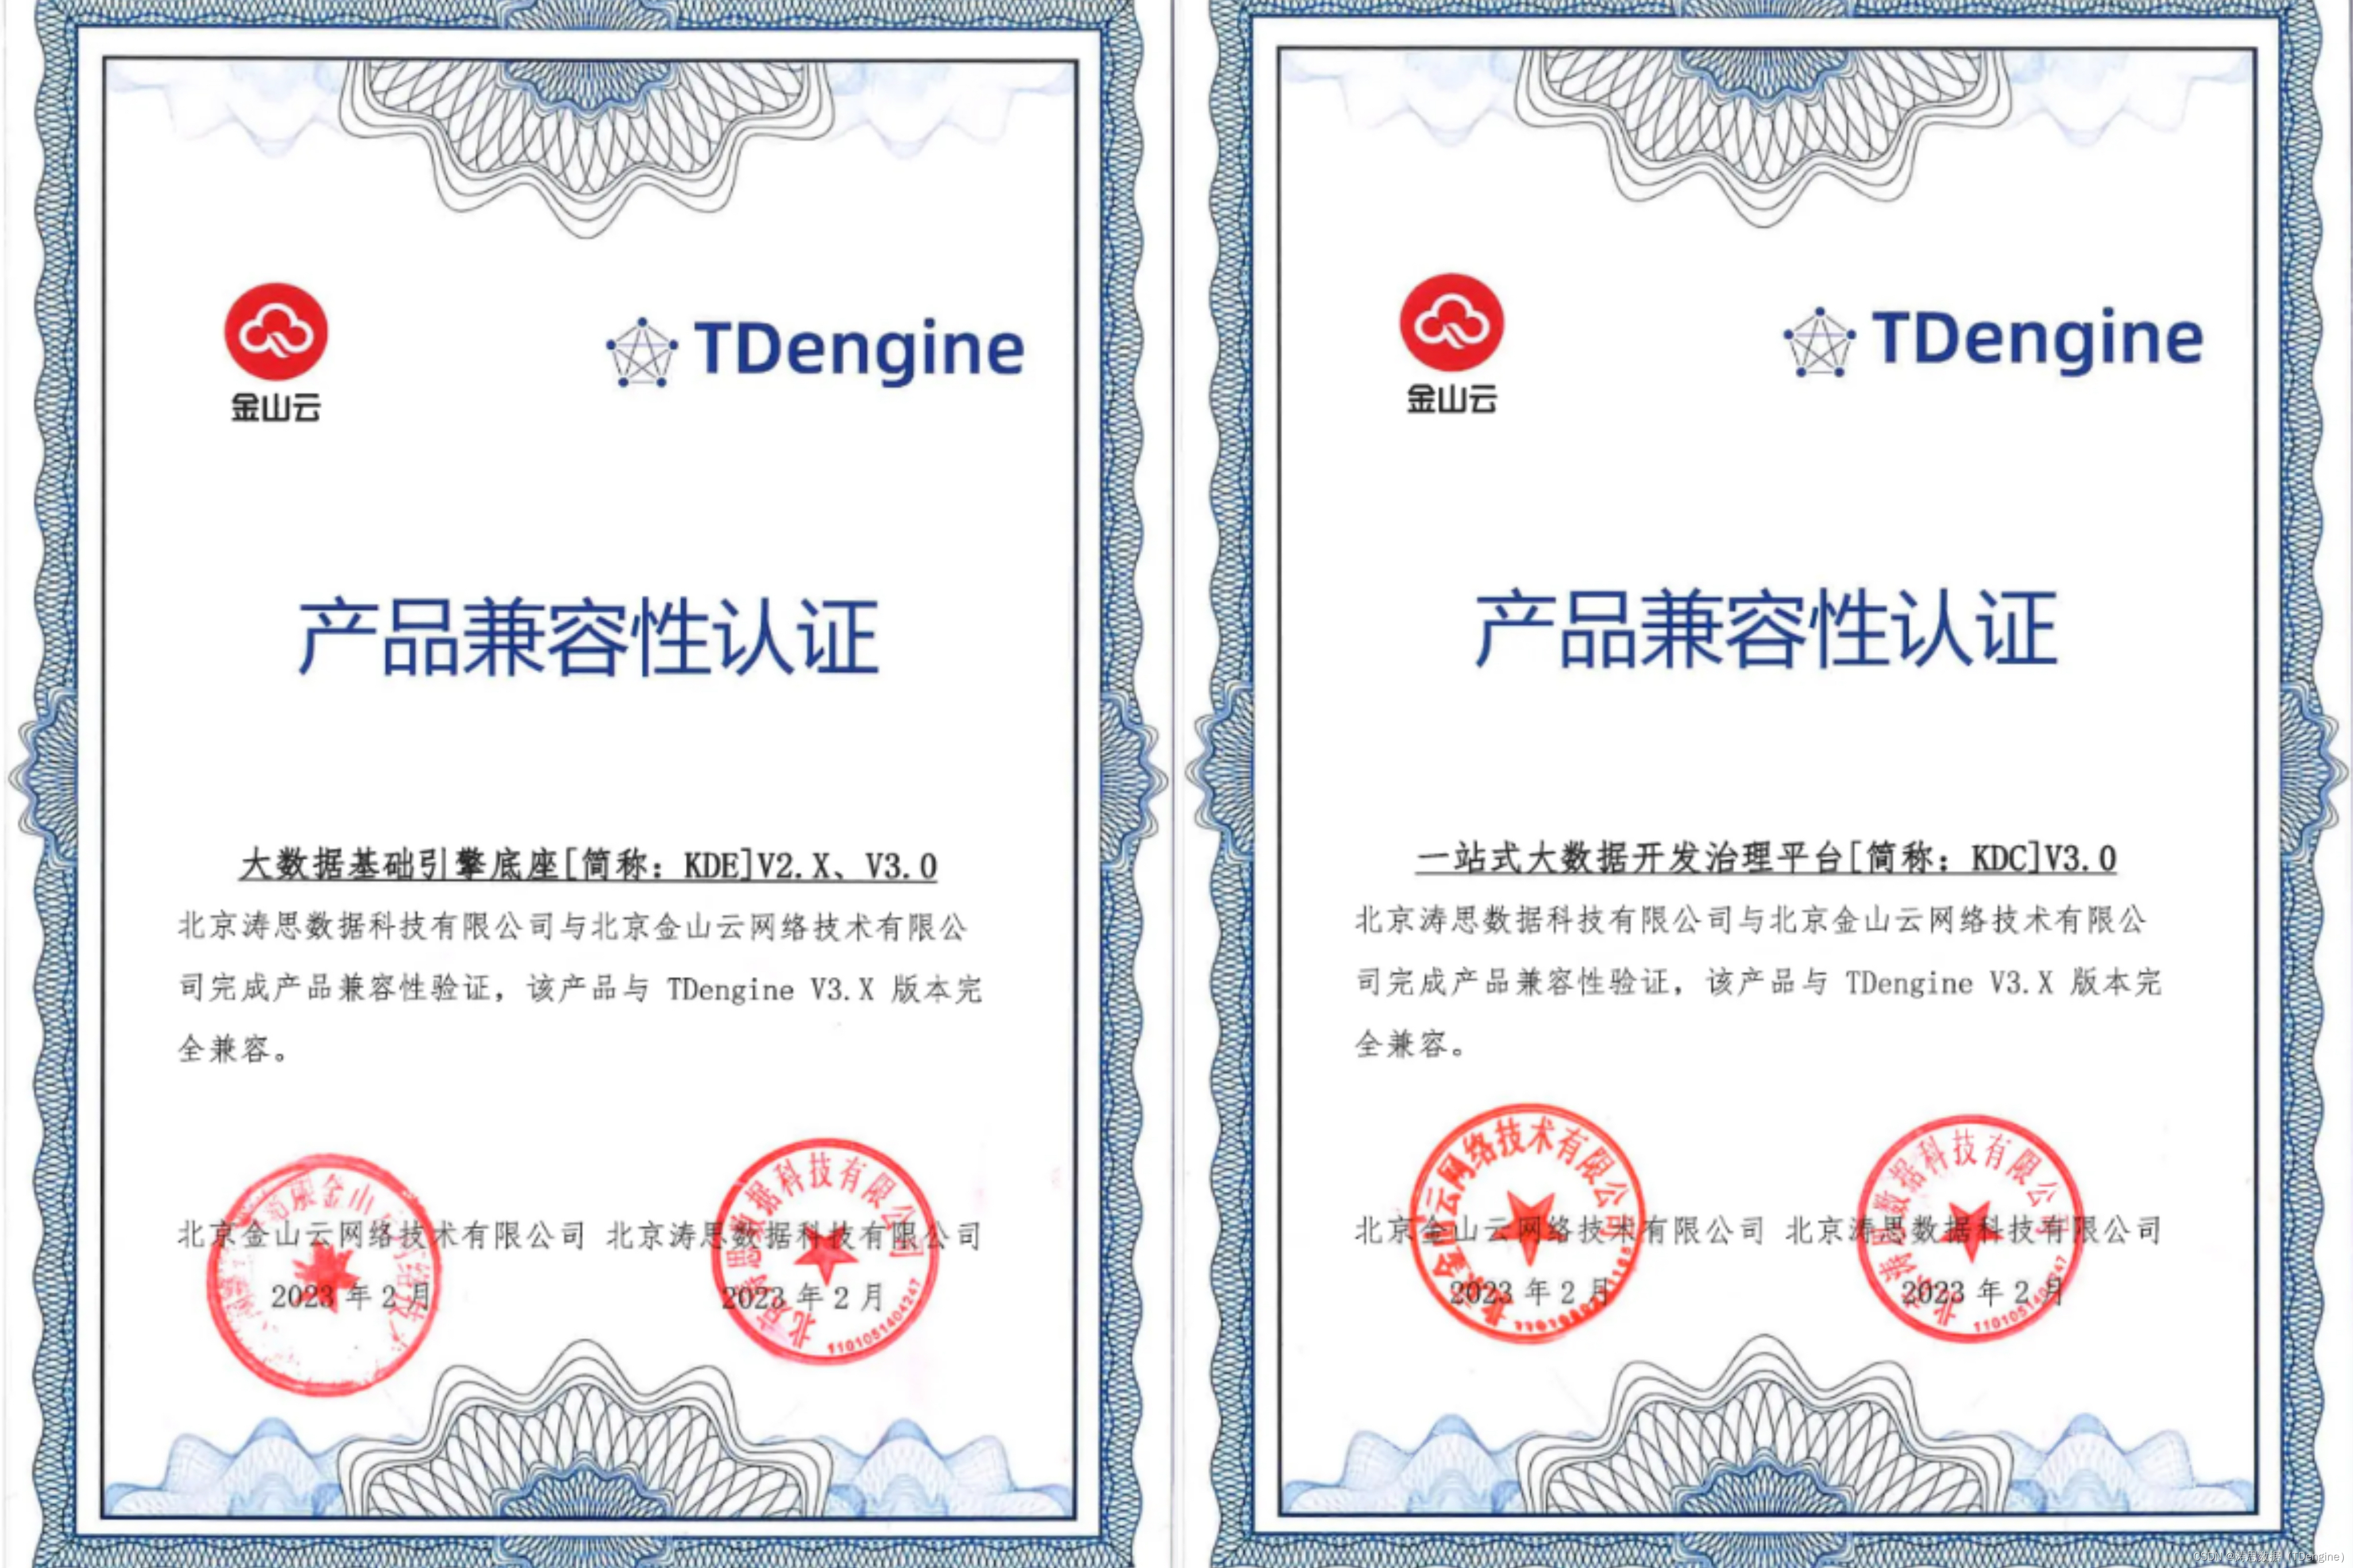 时序数据库 TDengine 与金山云两大产品完成兼容互认证